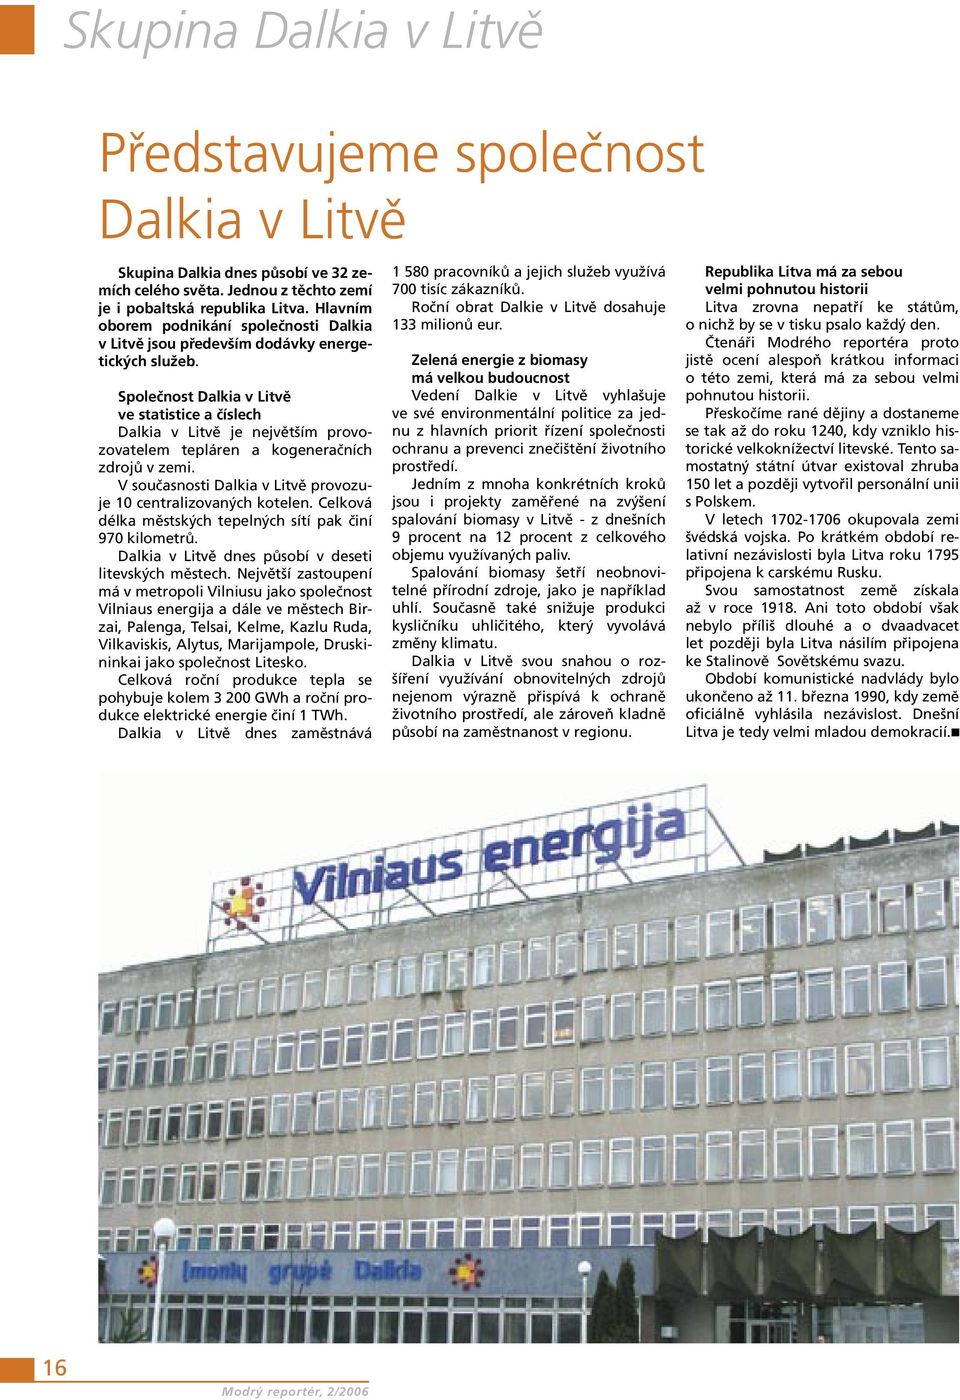 Společnost Dalkia v Litvě ve statistice a číslech Dalkia v Litvě je největším provozovatelem tepláren a kogeneračních zdrojů v zemi. V současnosti Dalkia v Litvě provozuje 10 centralizovaných kotelen.